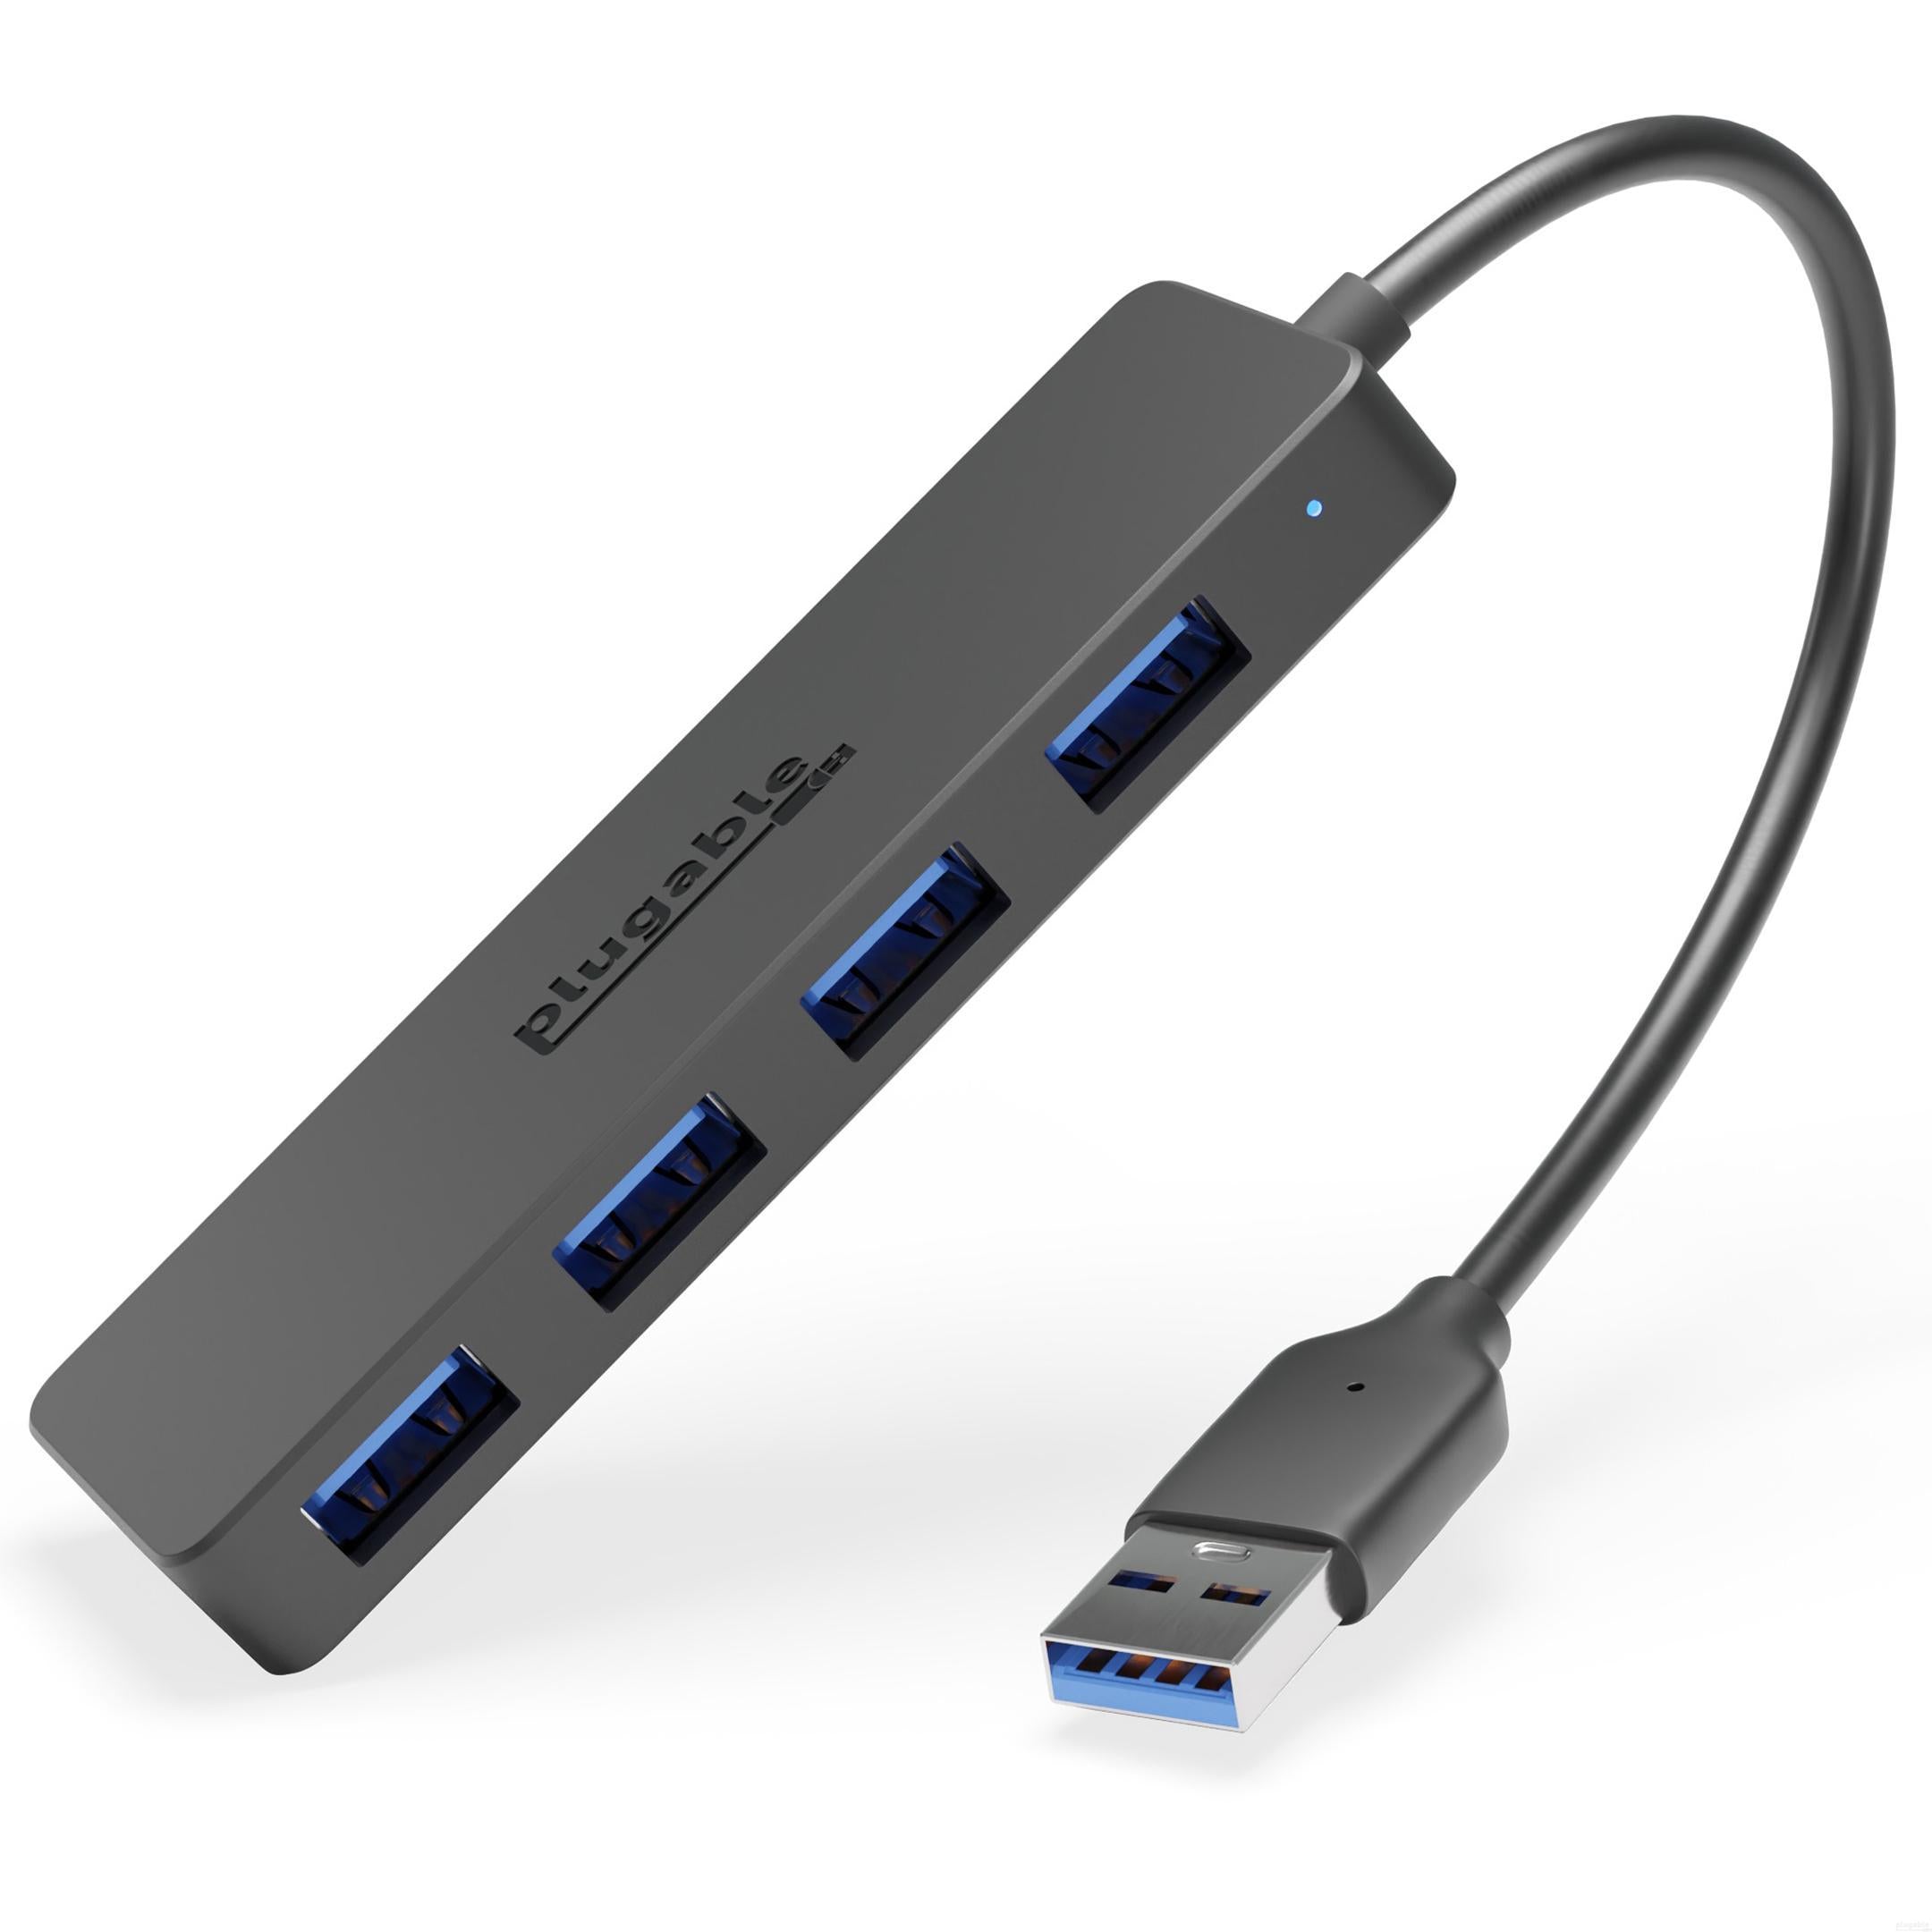 Plugable USB 3.0 4-Port Hub